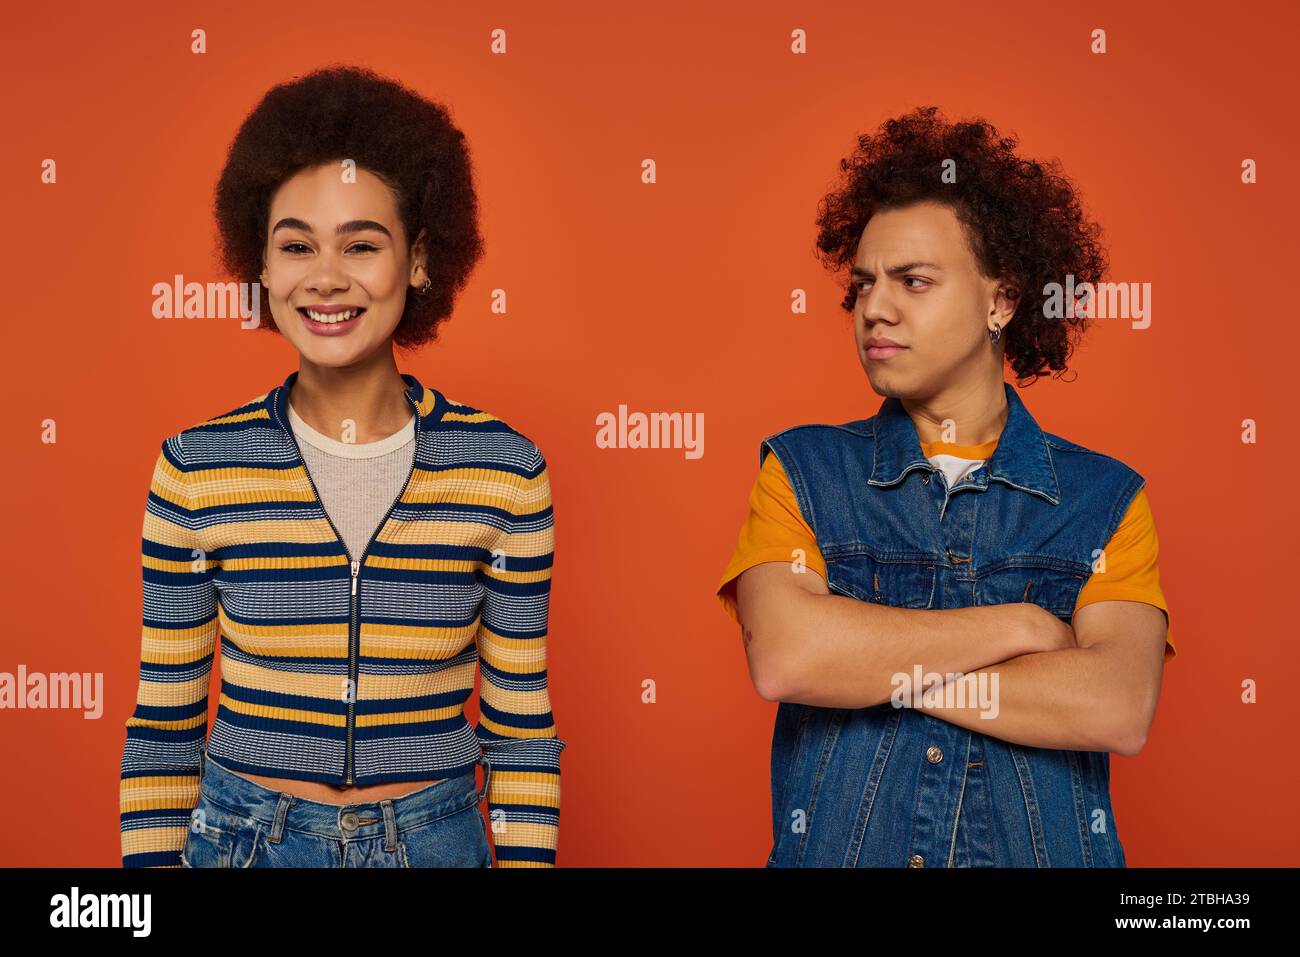 Junger afroamerikanischer Mann, der unzufrieden aussieht, während die Schwester fröhlich vor orangefarbenem Hintergrund lächelt Stockfoto